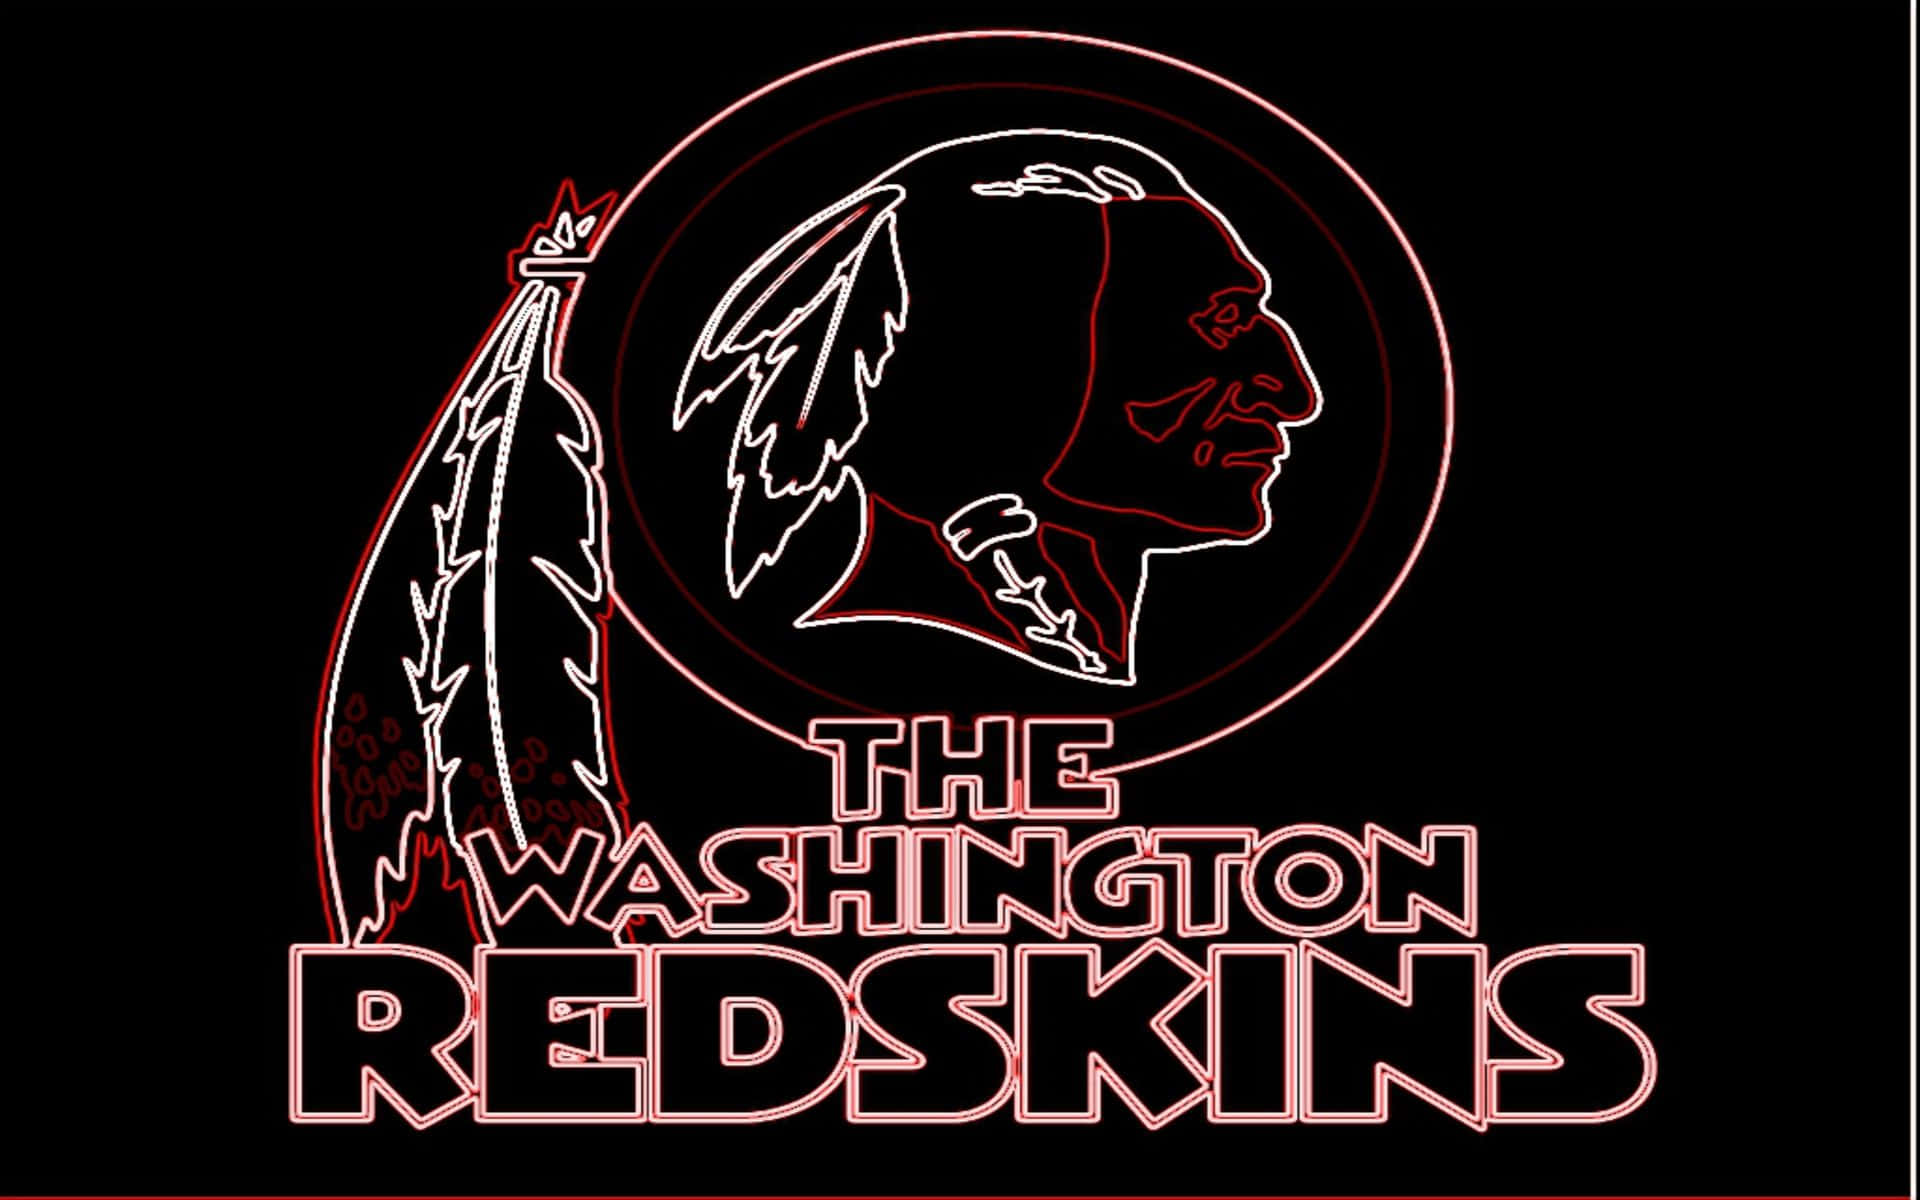 Losfans Se Unen En El Partido De Los Washington Redskins Fondo de pantalla